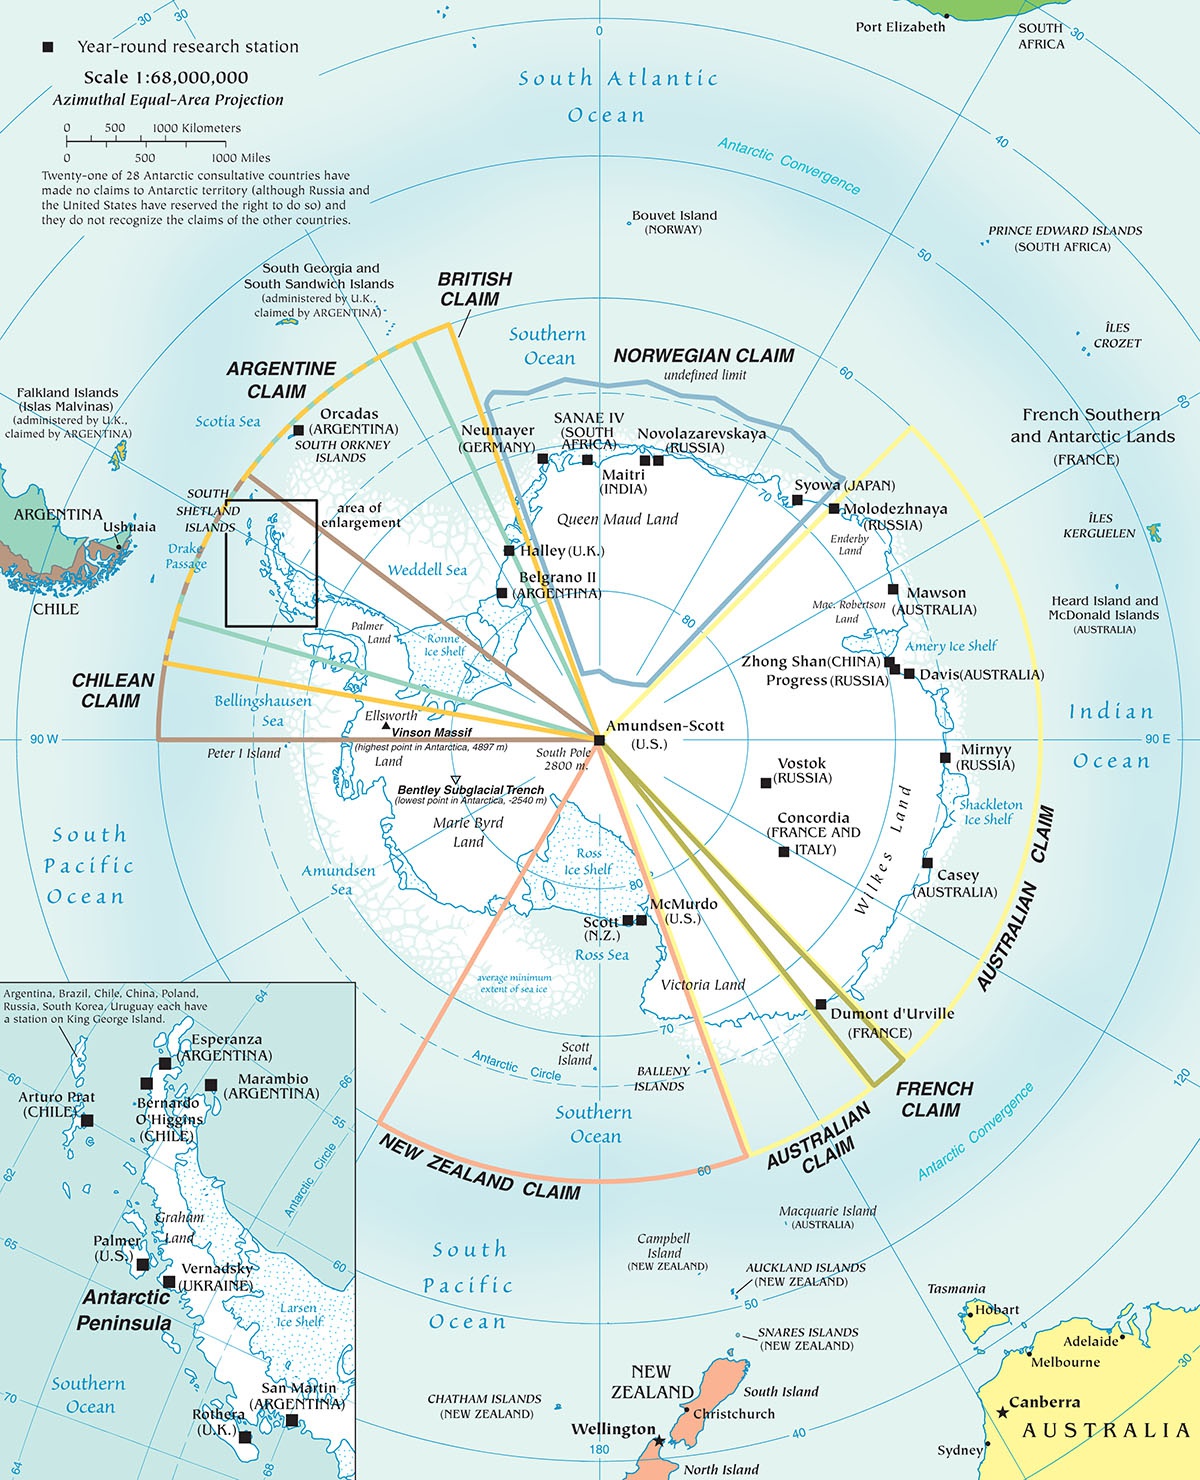 Карта раздела Антарктиды - каждому свой кусок ледяного пирога.